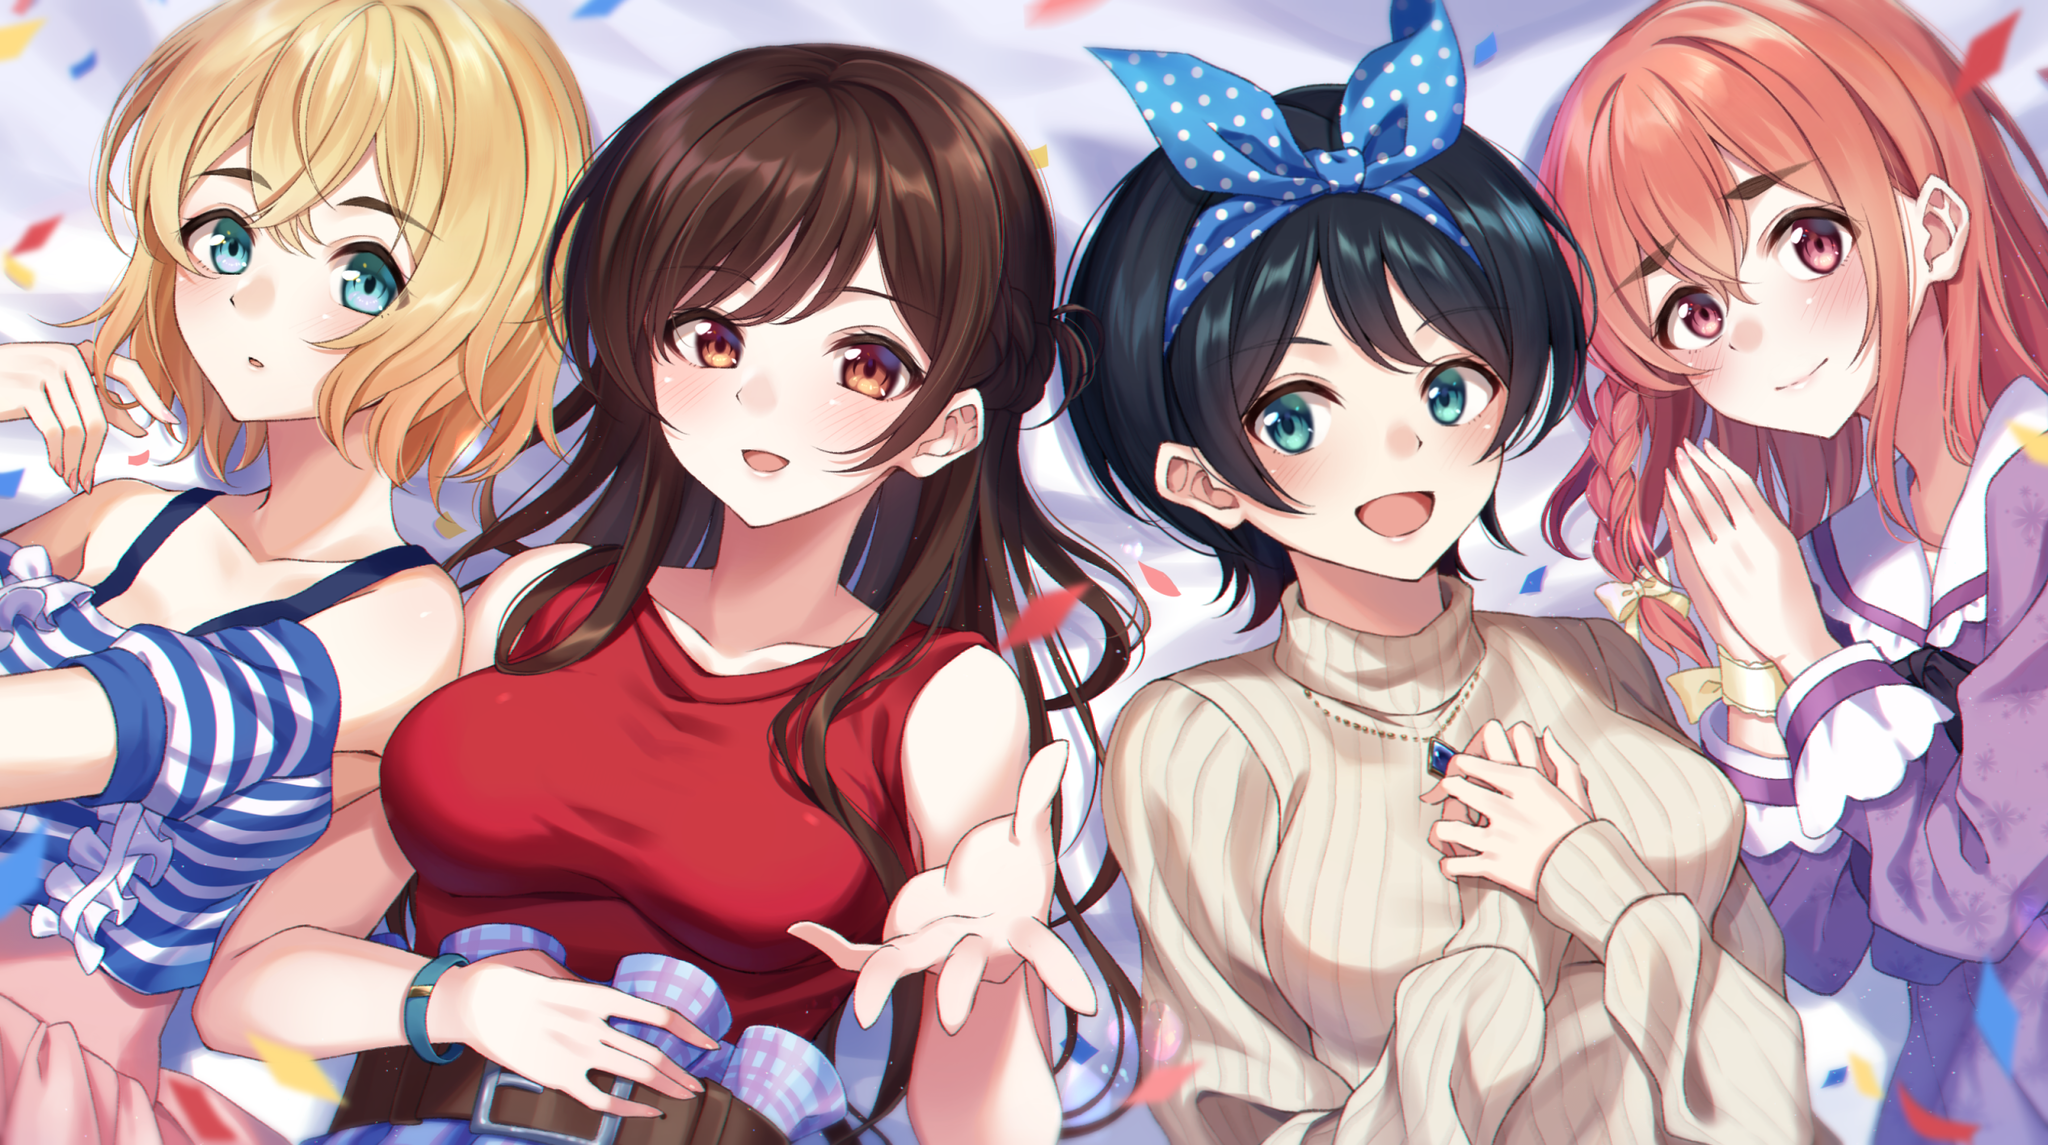 Girls for an hour - Anime art, Anime, Chizuru Ichinose, Nanami Mami, Sarashina Ruka, Sakurasawa Sumi, Kanojo okarishimasu